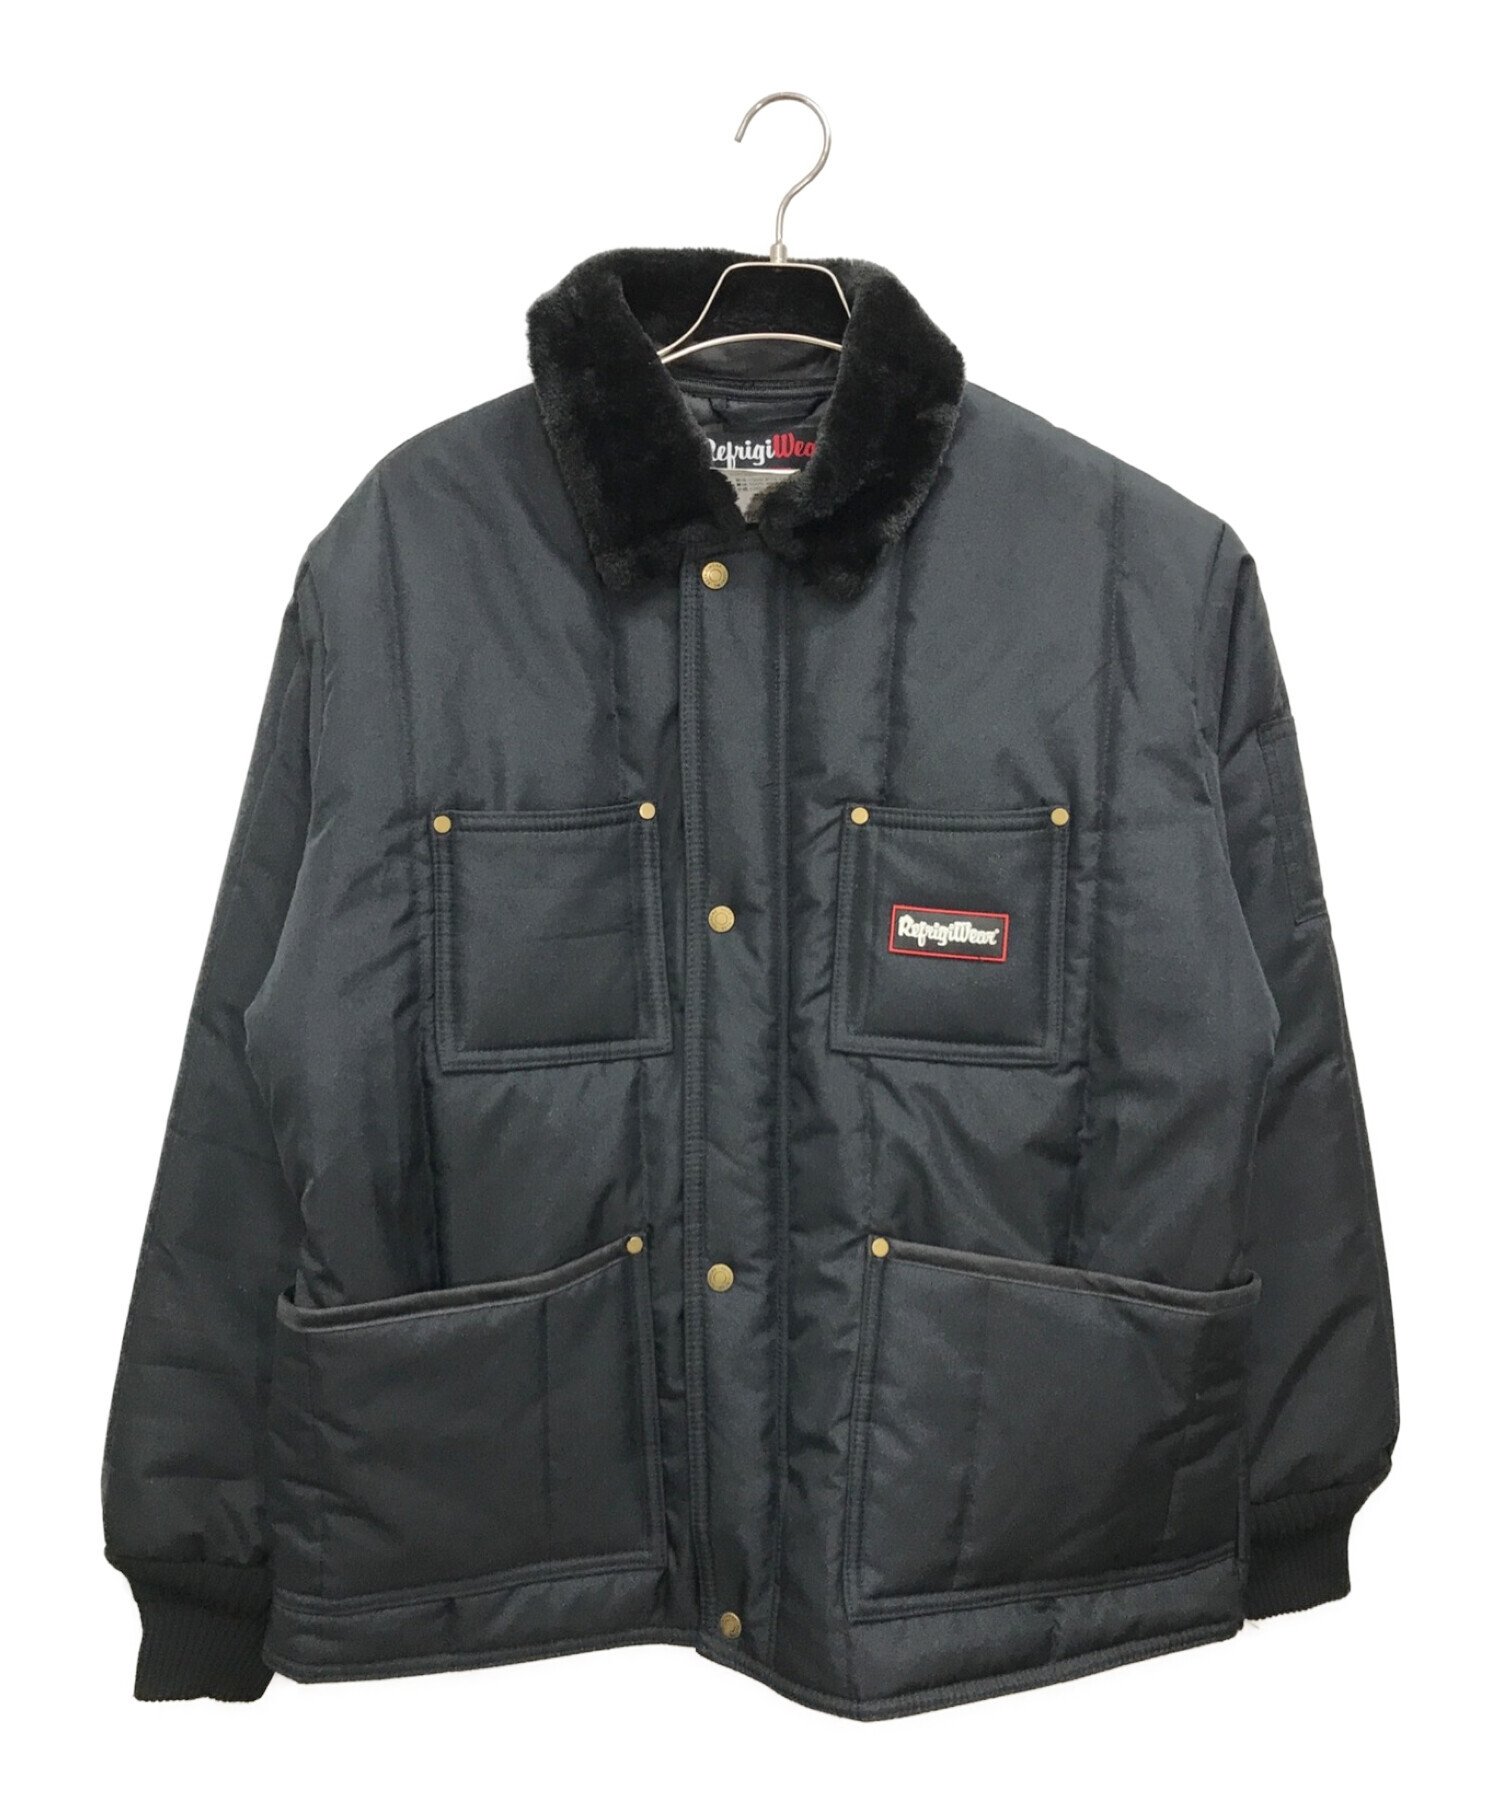 SUPREME (シュプリーム) refrigiwear (リフリッジウェア) インシュレイティドアイロン ジップアップジャケット / 20AW  Insulated Iron-Tuff Jacket ブラック サイズ:Ｌ